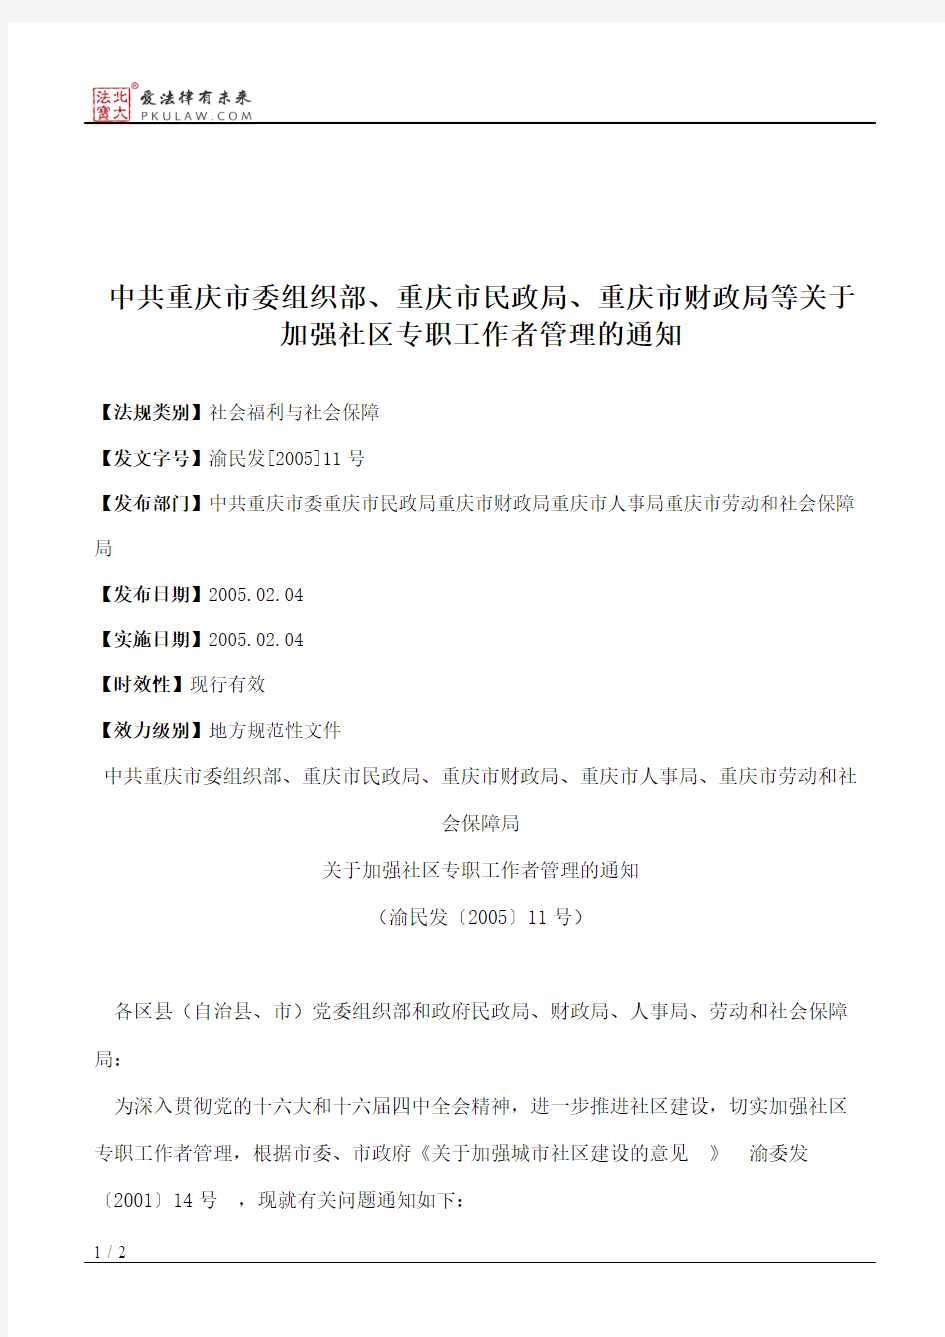 中共重庆市委组织部、重庆市民政局、重庆市财政局等关于加强社区